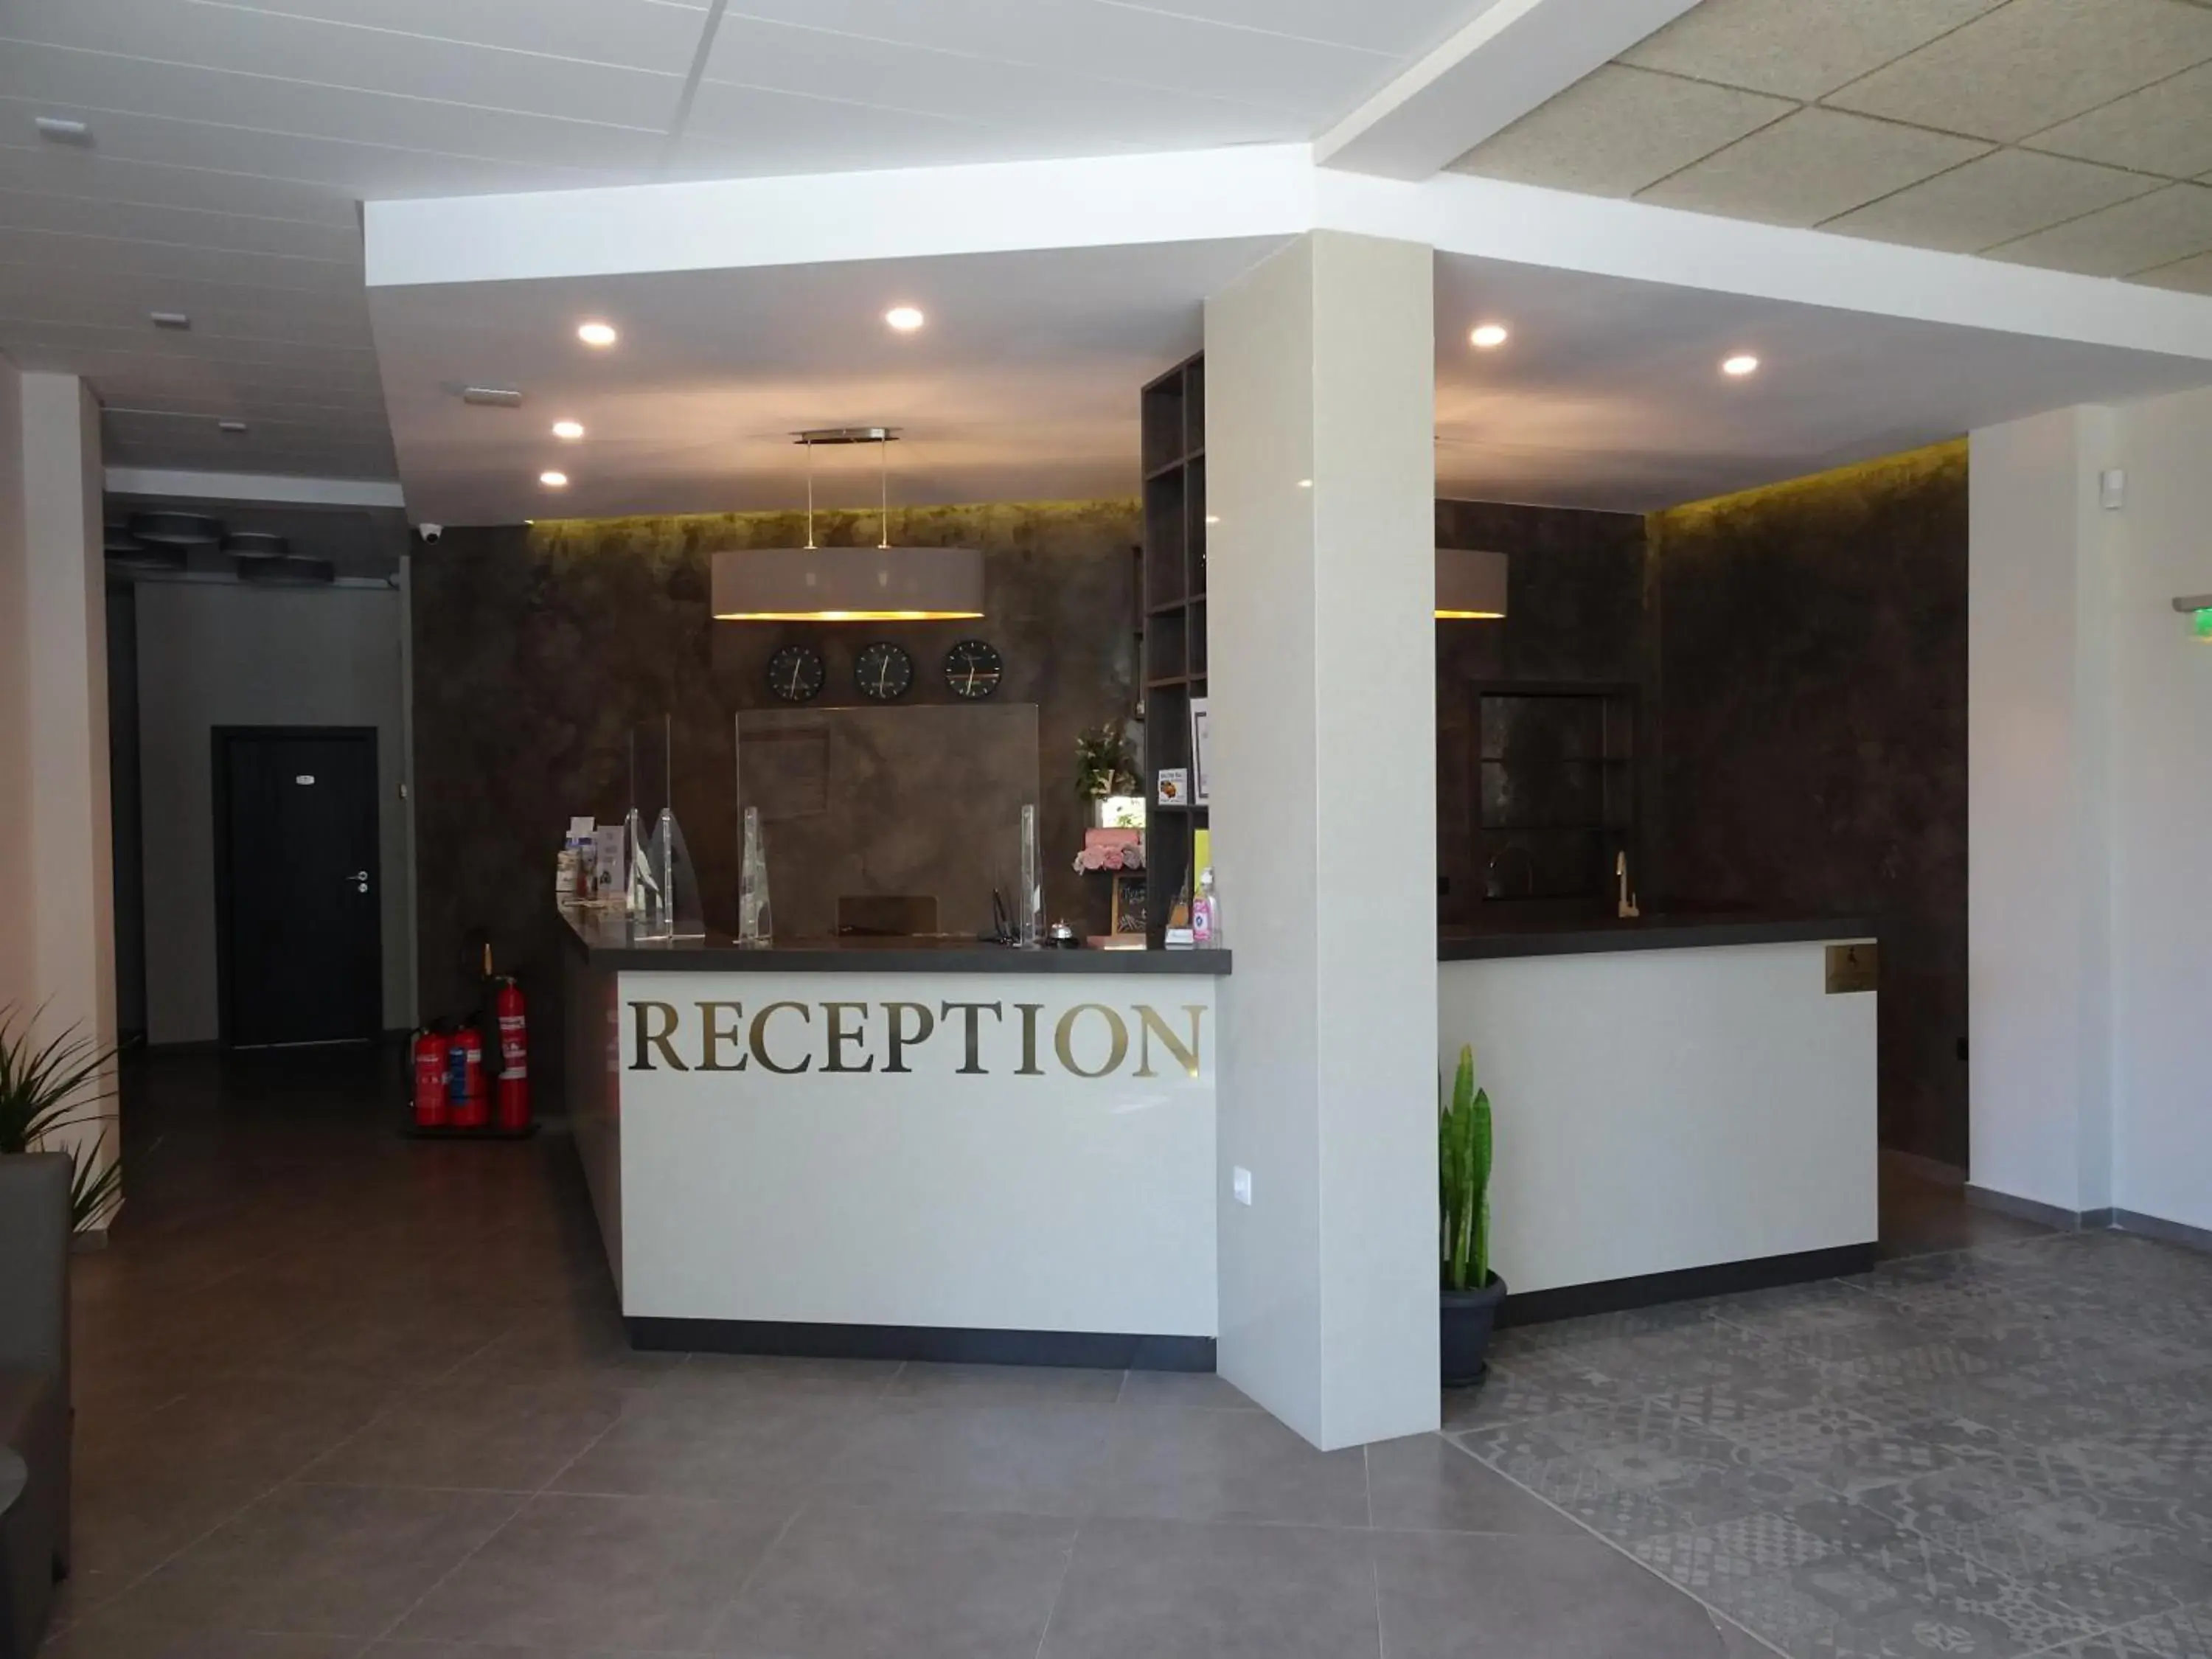 Lobby or reception in Hotel Samara